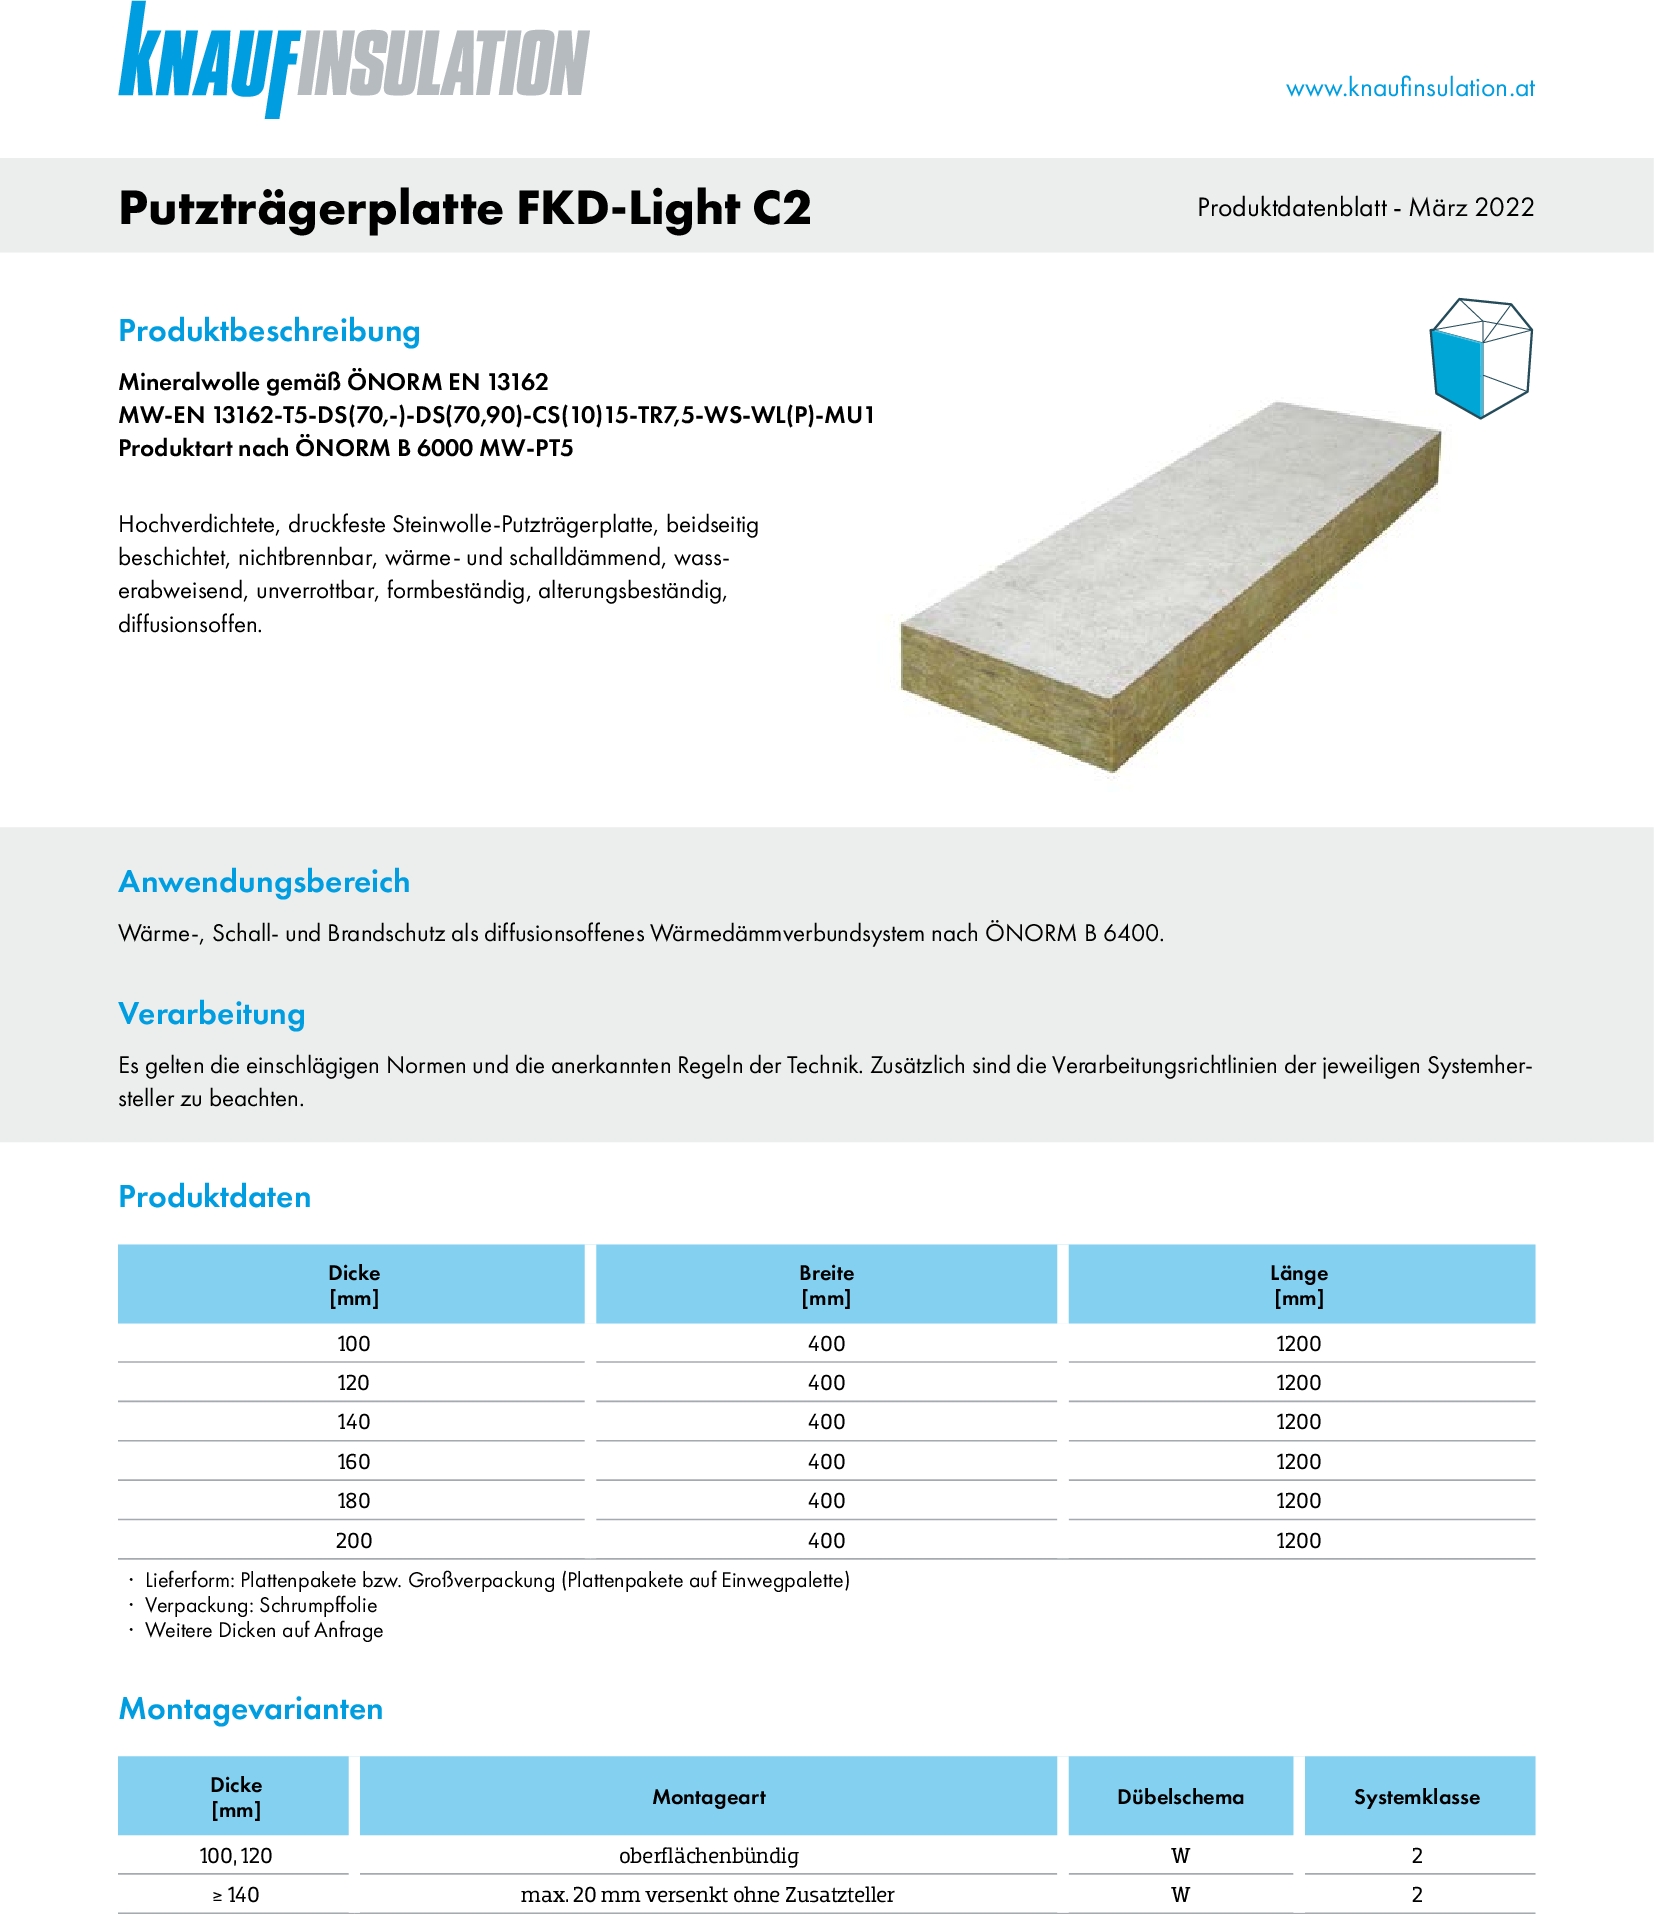 Putzträgerplatte FKD-Light C2, Produktdatenblatt